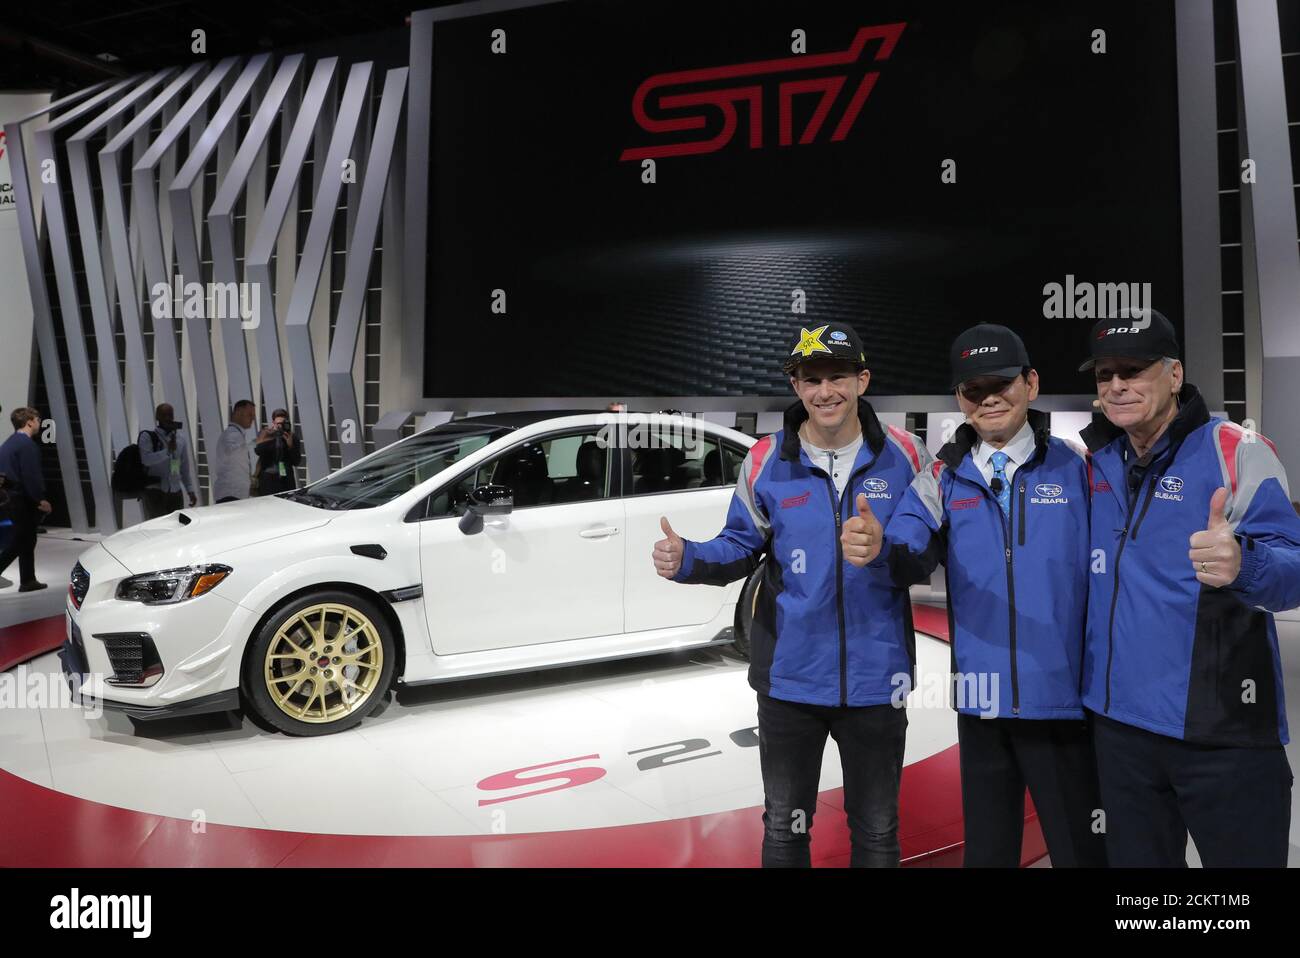 Scott Speed (L), piloto de rally Race Car, se presenta con ejecutivos de Subaru durante la presentación del Subaru WRX S209 en el North American International Auto Show en Detroit, Michigan, EE.UU., 14 de enero de 2019. REUTERS/Brendan McDermid Foto de stock